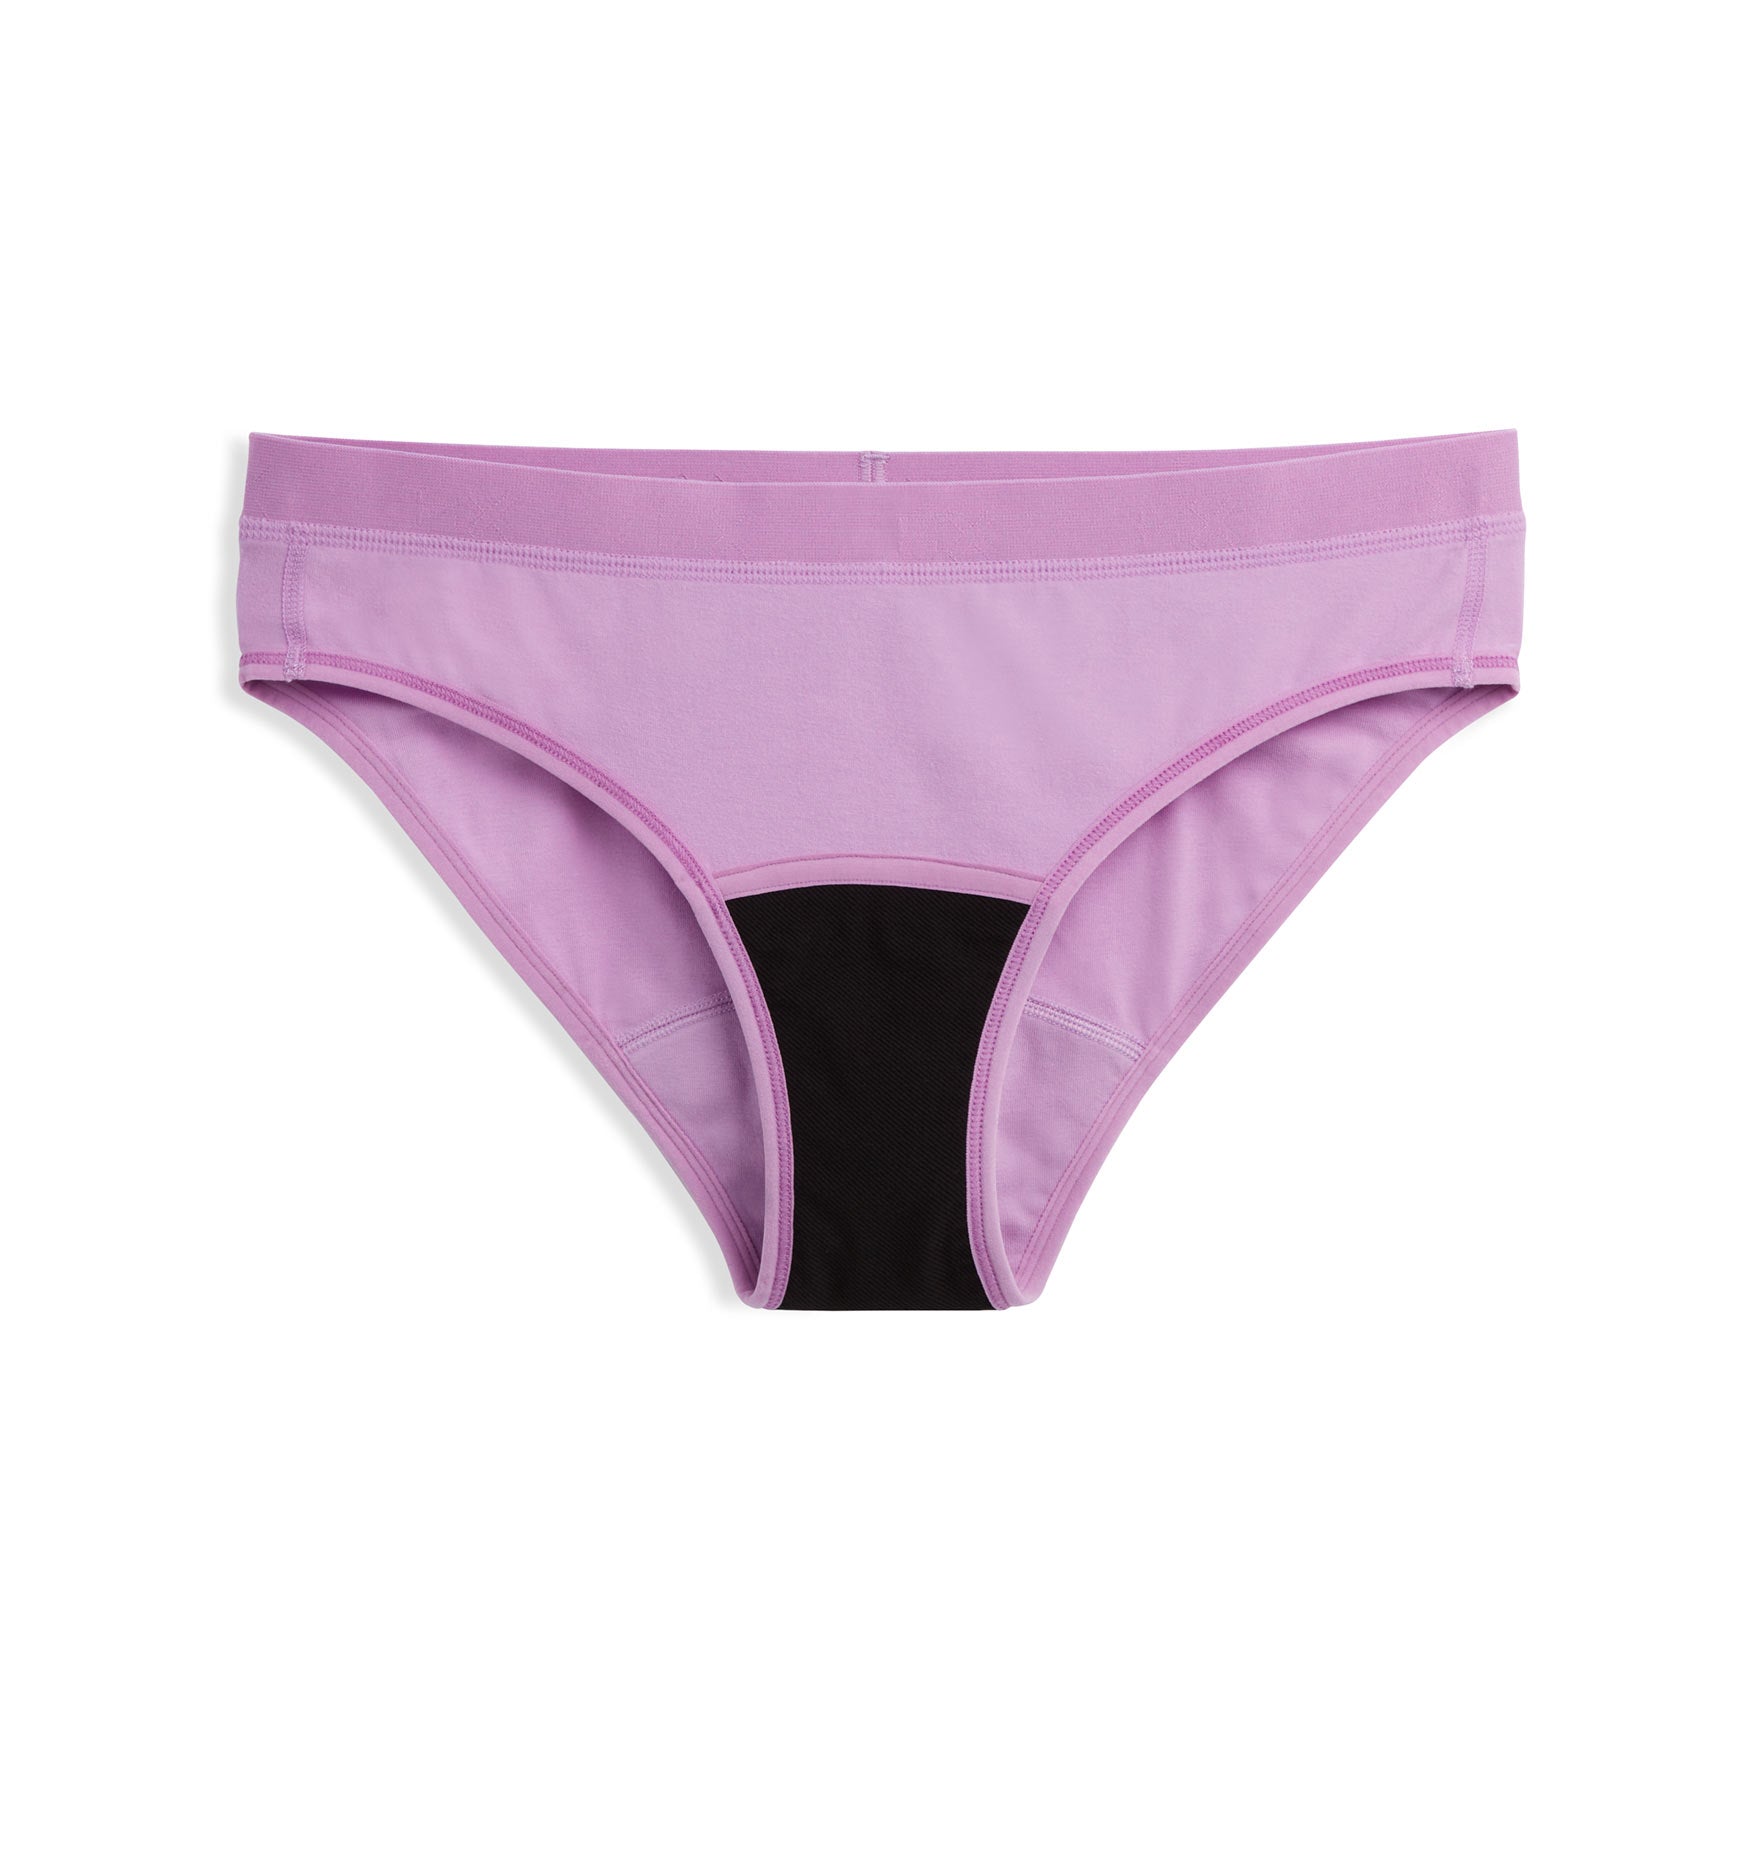 First Line Period Bikini - Sugar Violet